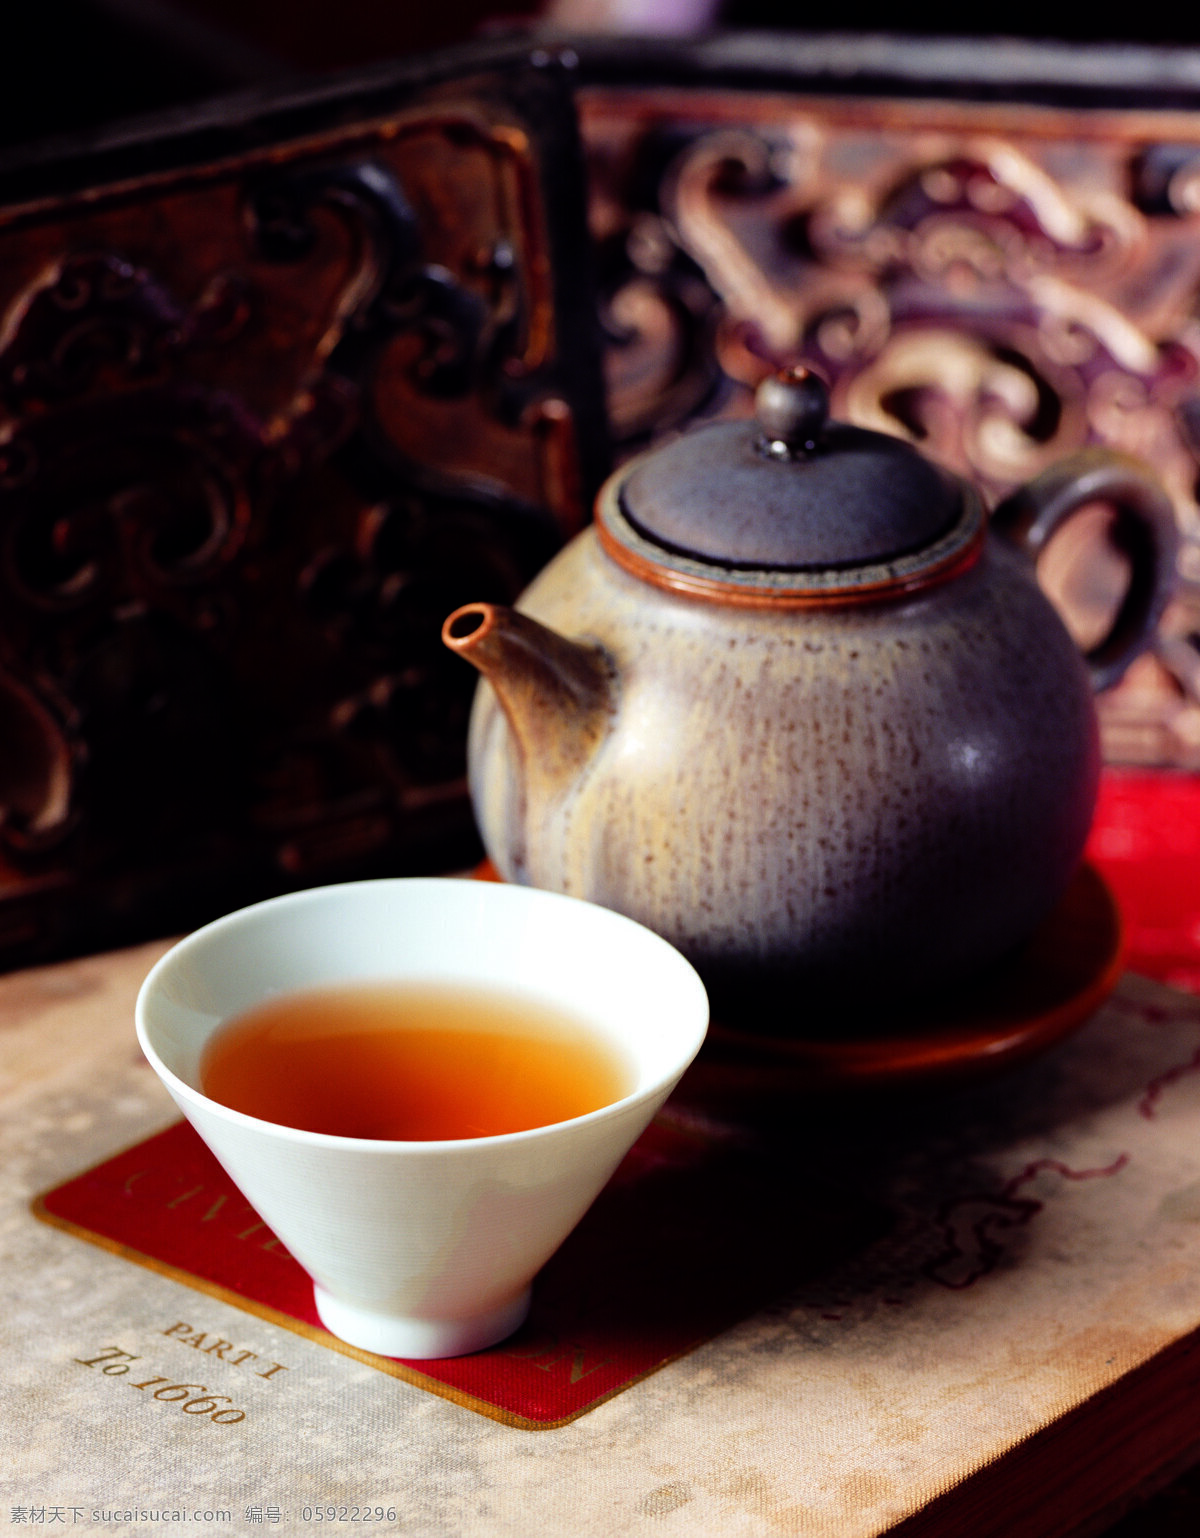 品尝免费下载 茶杯 茶壶 茶具 茶水 茶叶 古色古香 广告 大 辞典 品茶 品尝 饮料 饮品 文化艺术